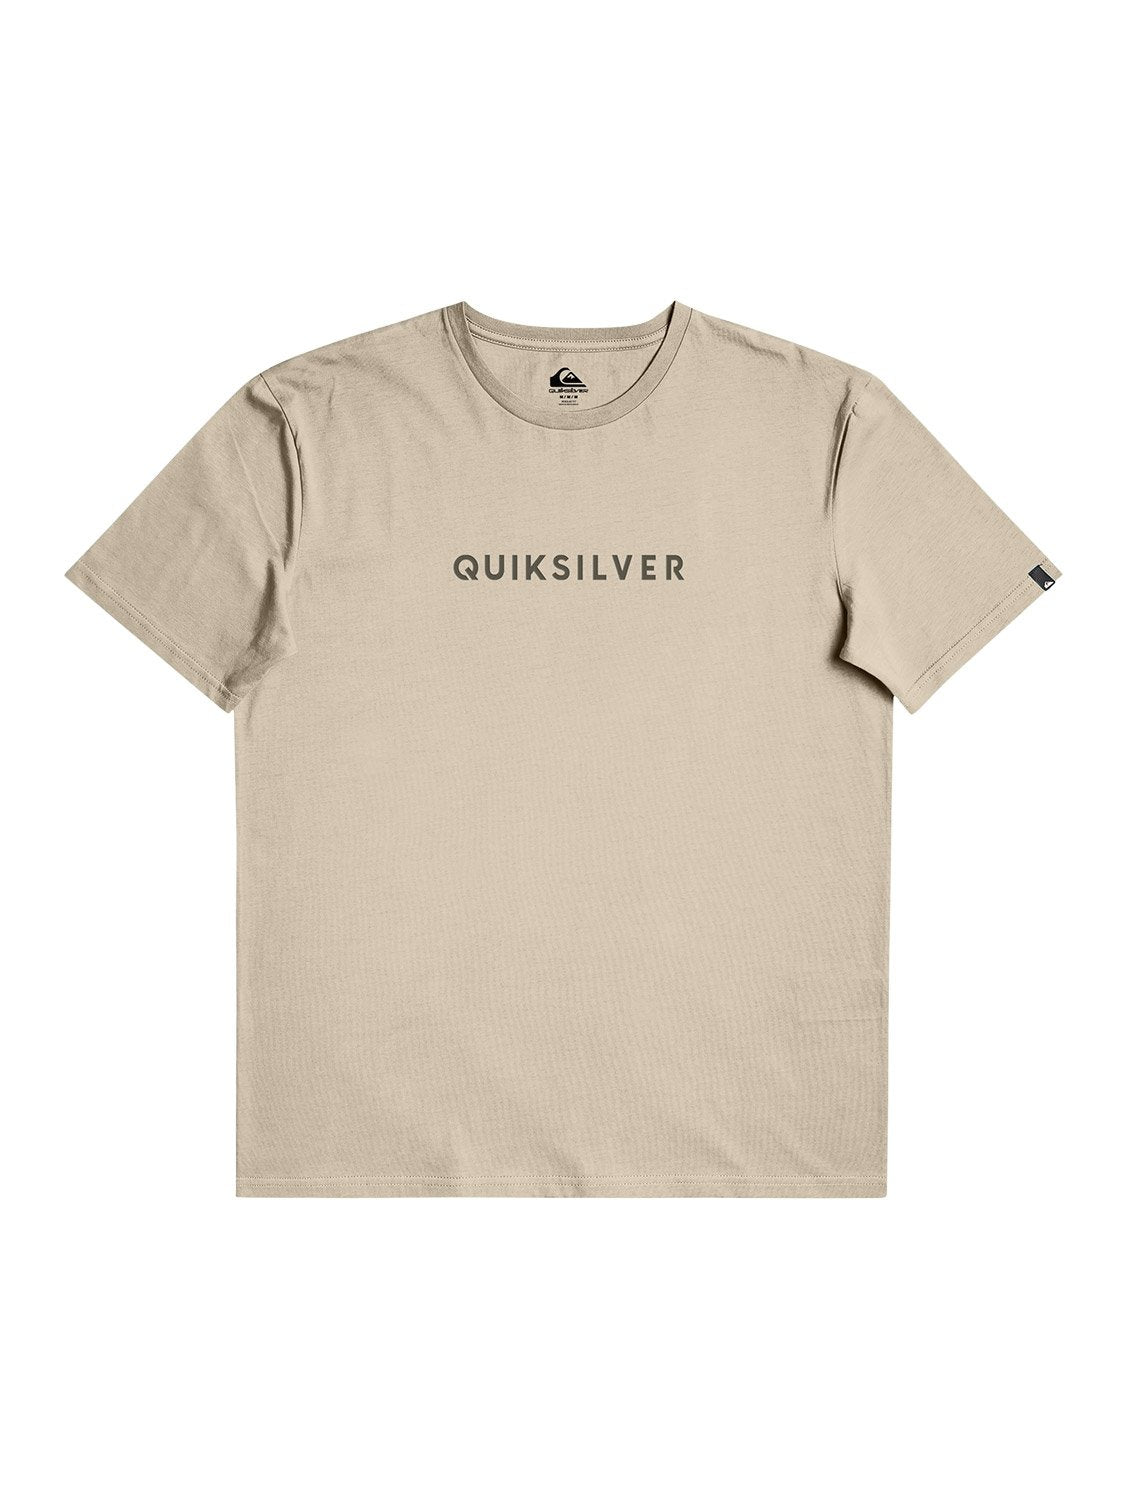 Quiksilver Men's Wordmark T-Shirts